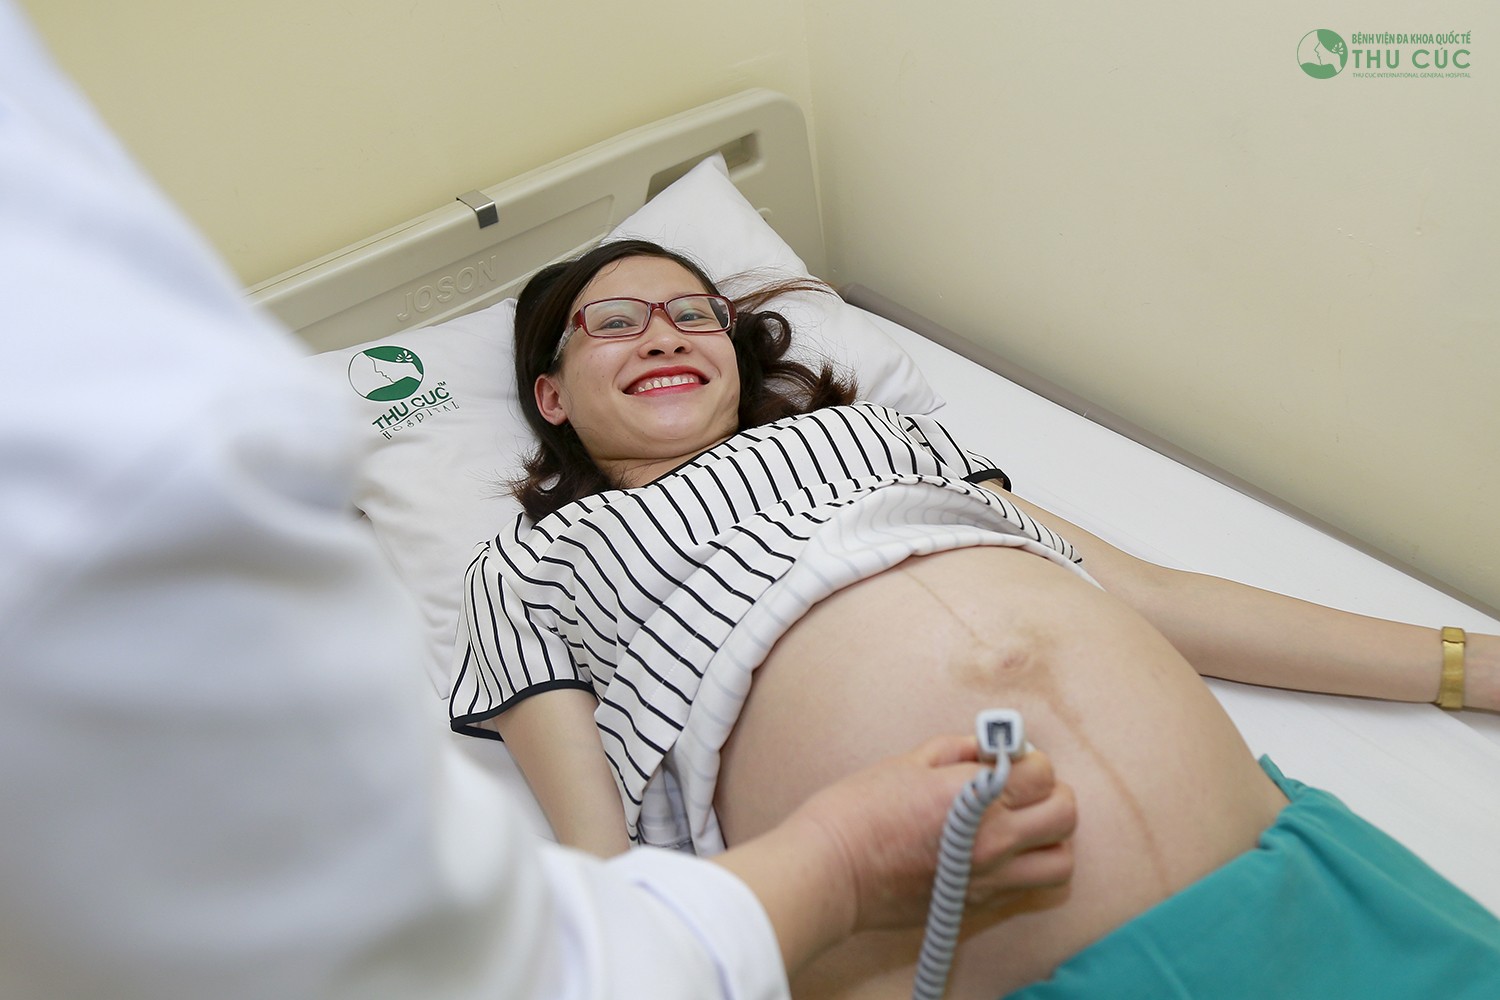 Nhau tiền đạo có thế phát hiện qua siêu âm thai. Do đó, thai phụ cần khám thai định kỳ